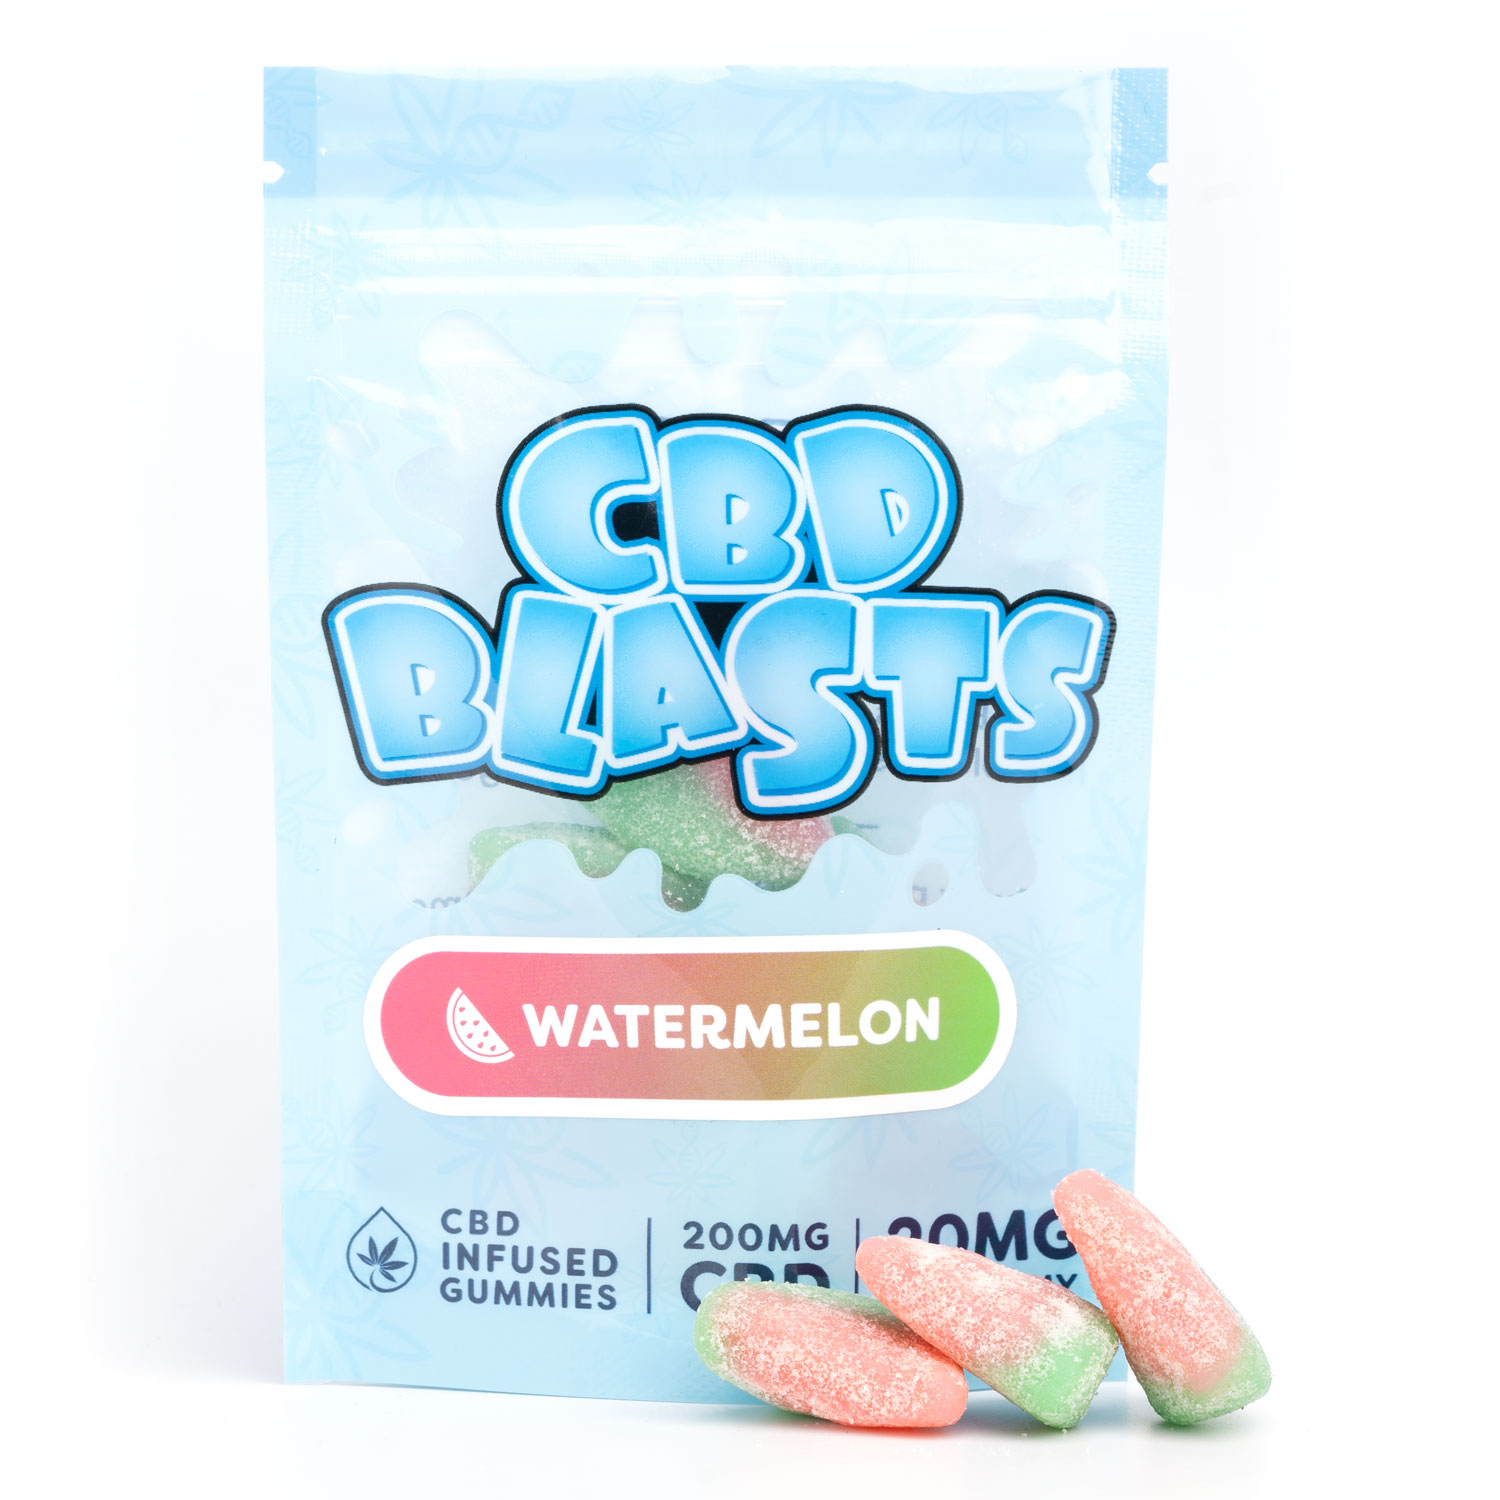 watermelon cbd blasts gummies